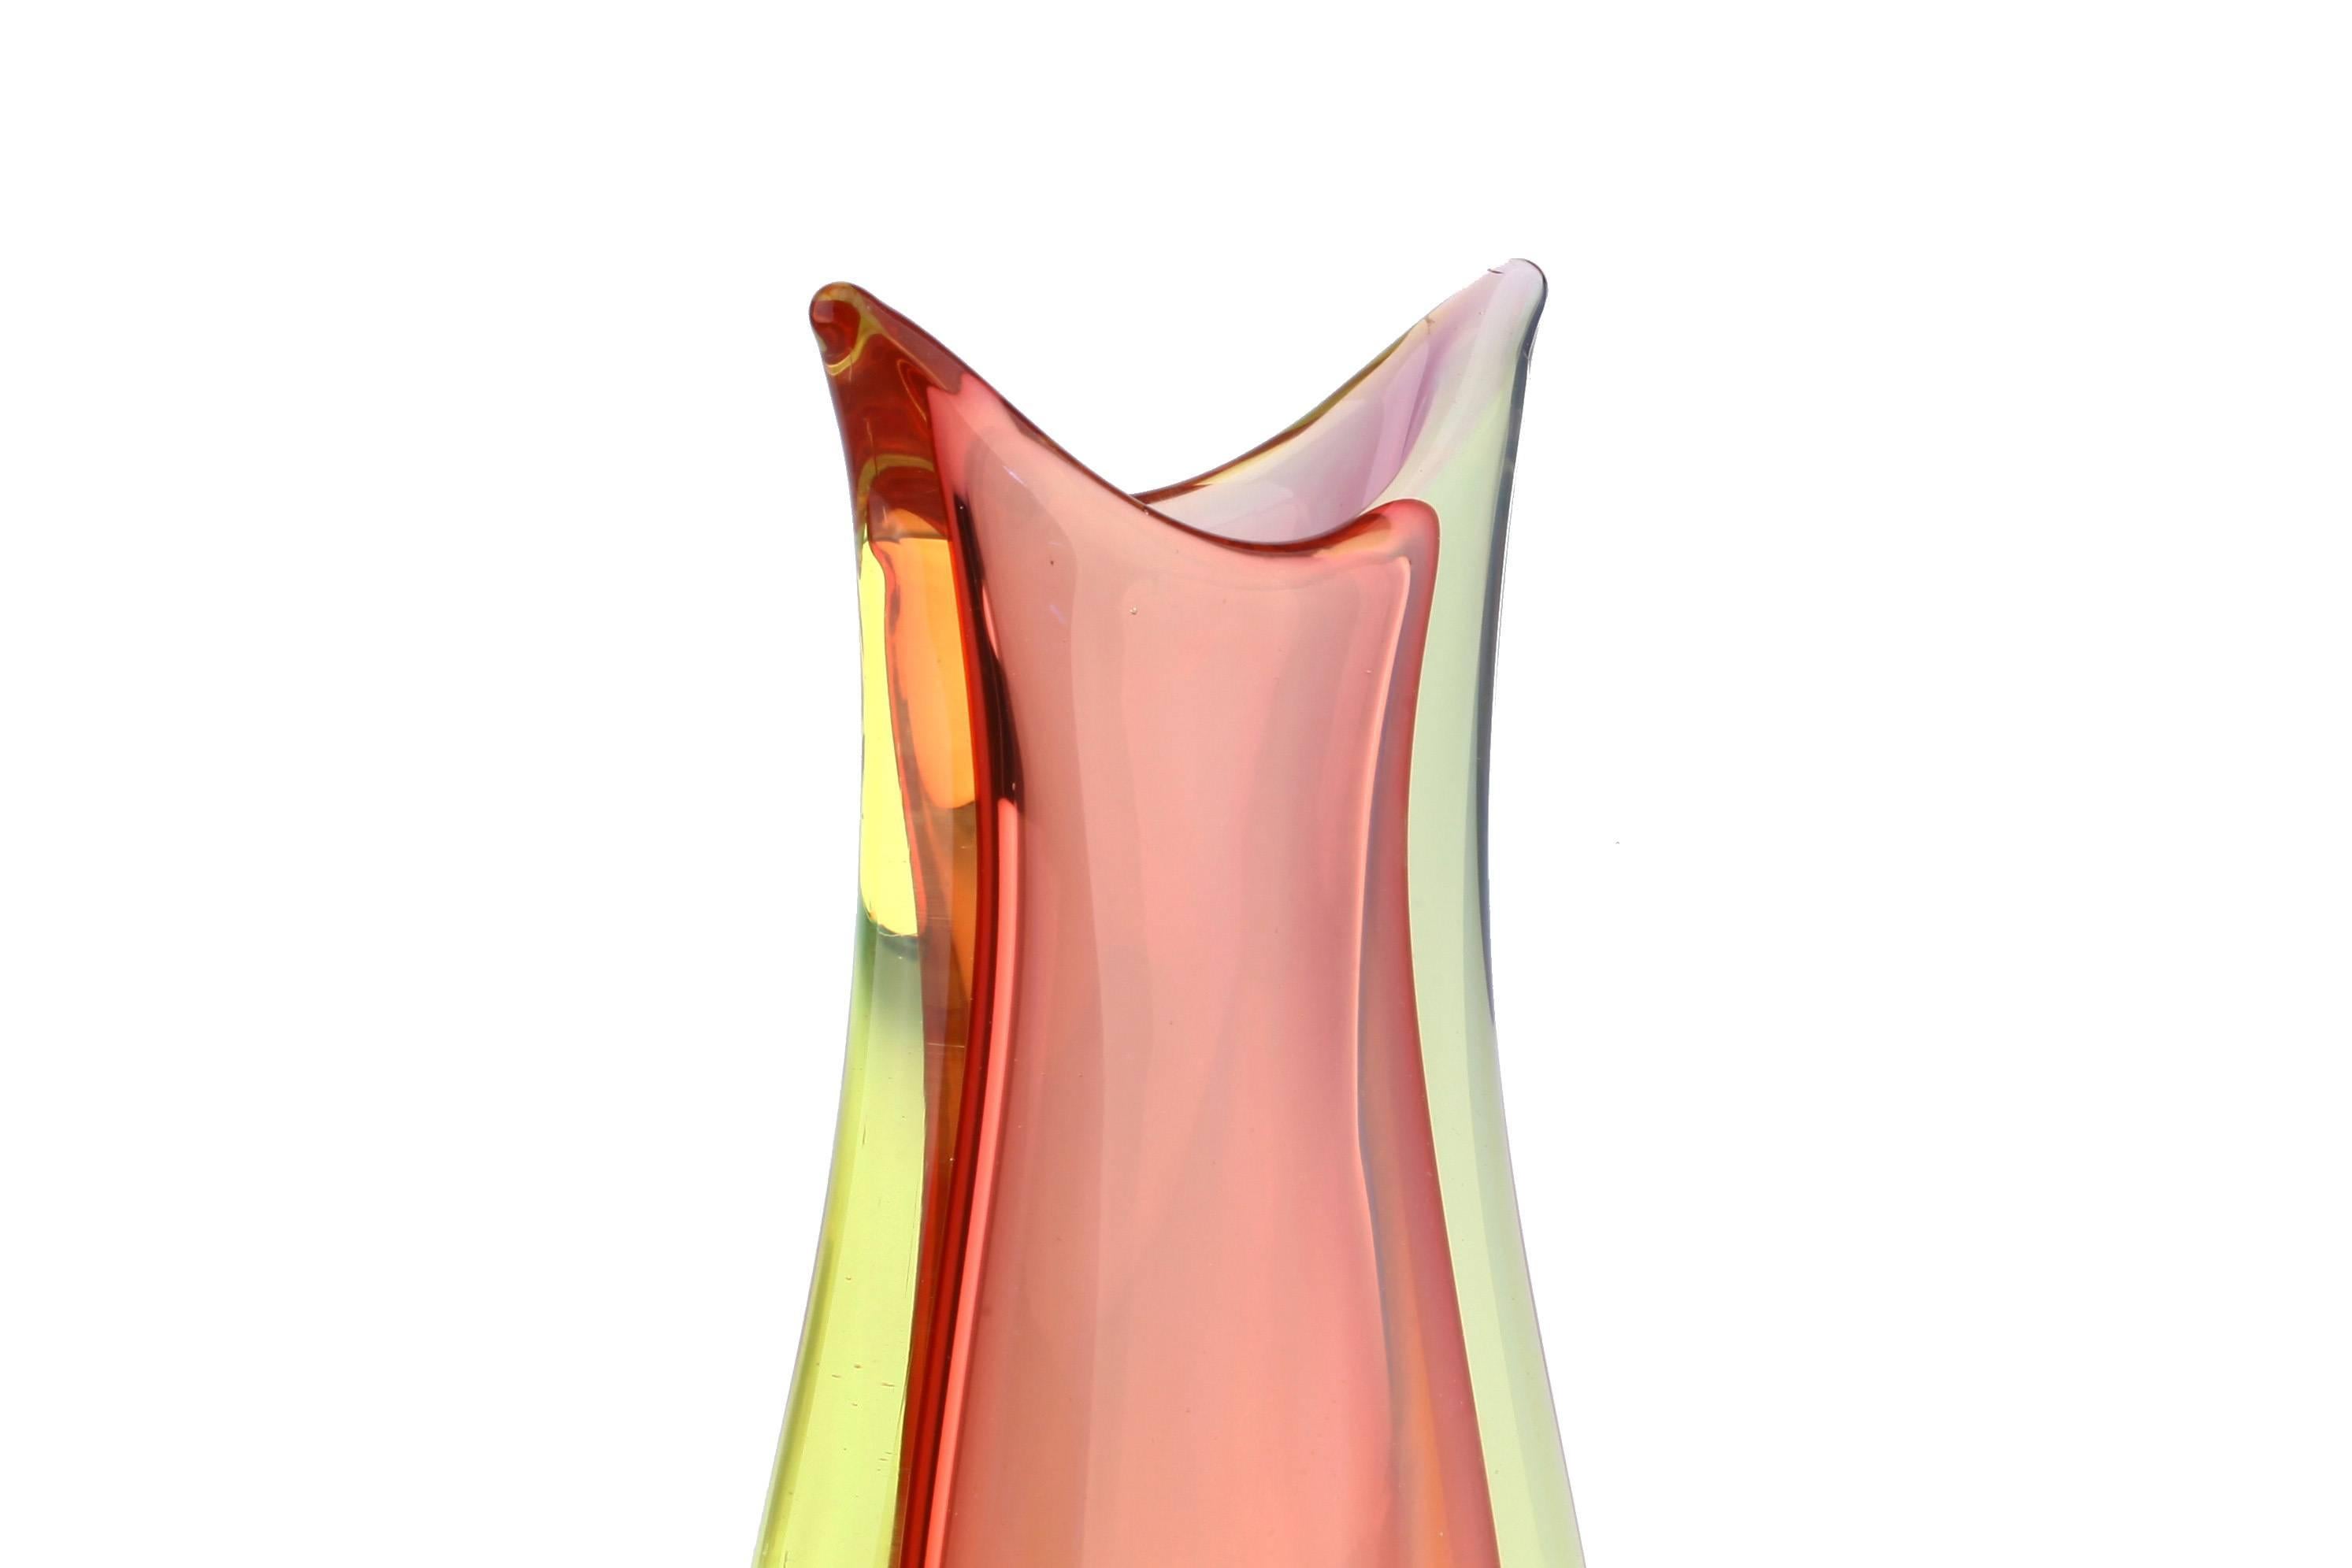 Italian Flavio Poli Seguso Murano Sommerso Organic Glass Vase For Sale